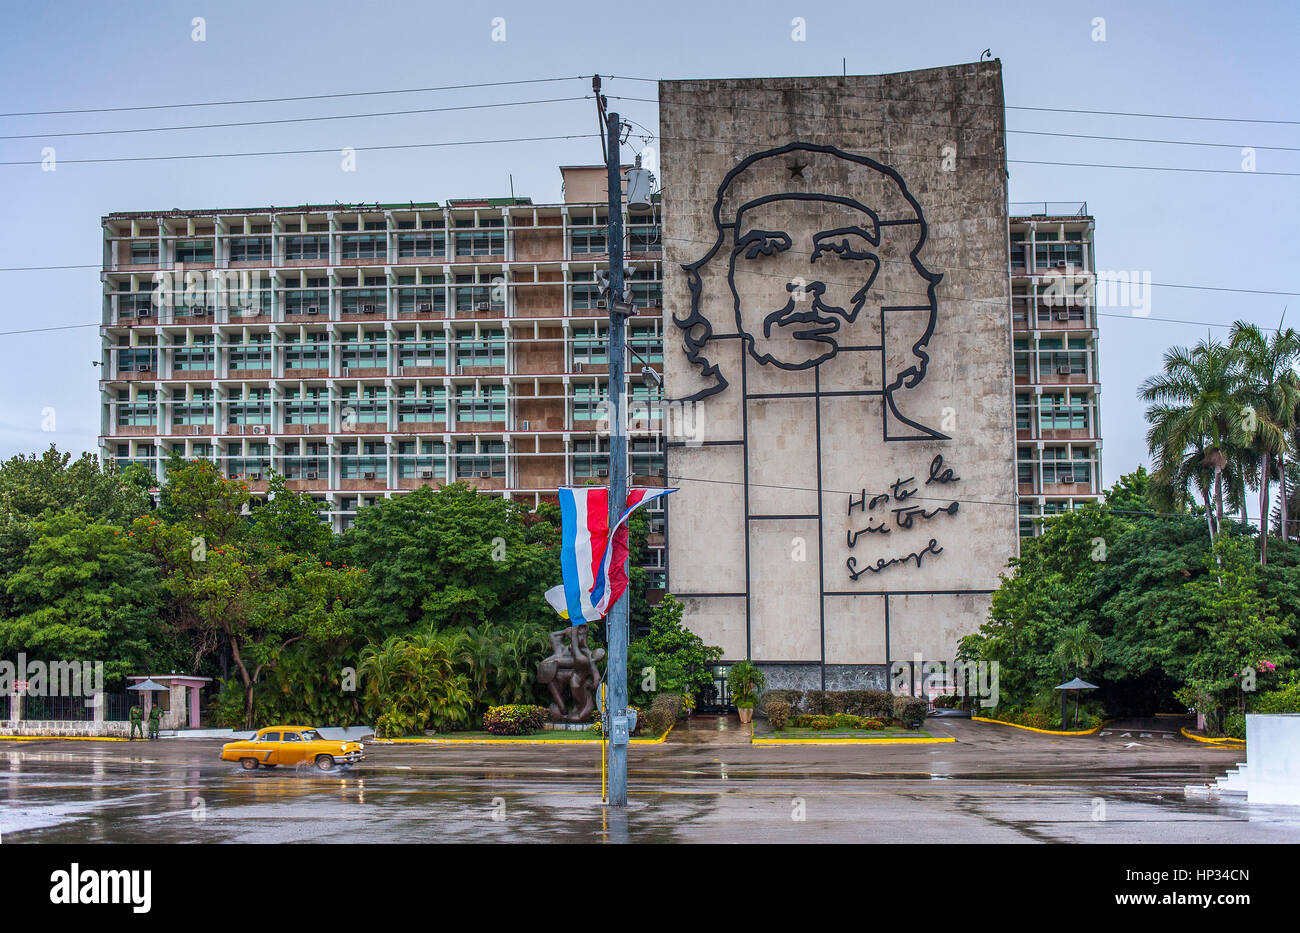 Ministry of Interior building with Che Guevara mural, Revolution Square, ''Plaza de la Revolucion'', La Habana, Cuba Stock Photo